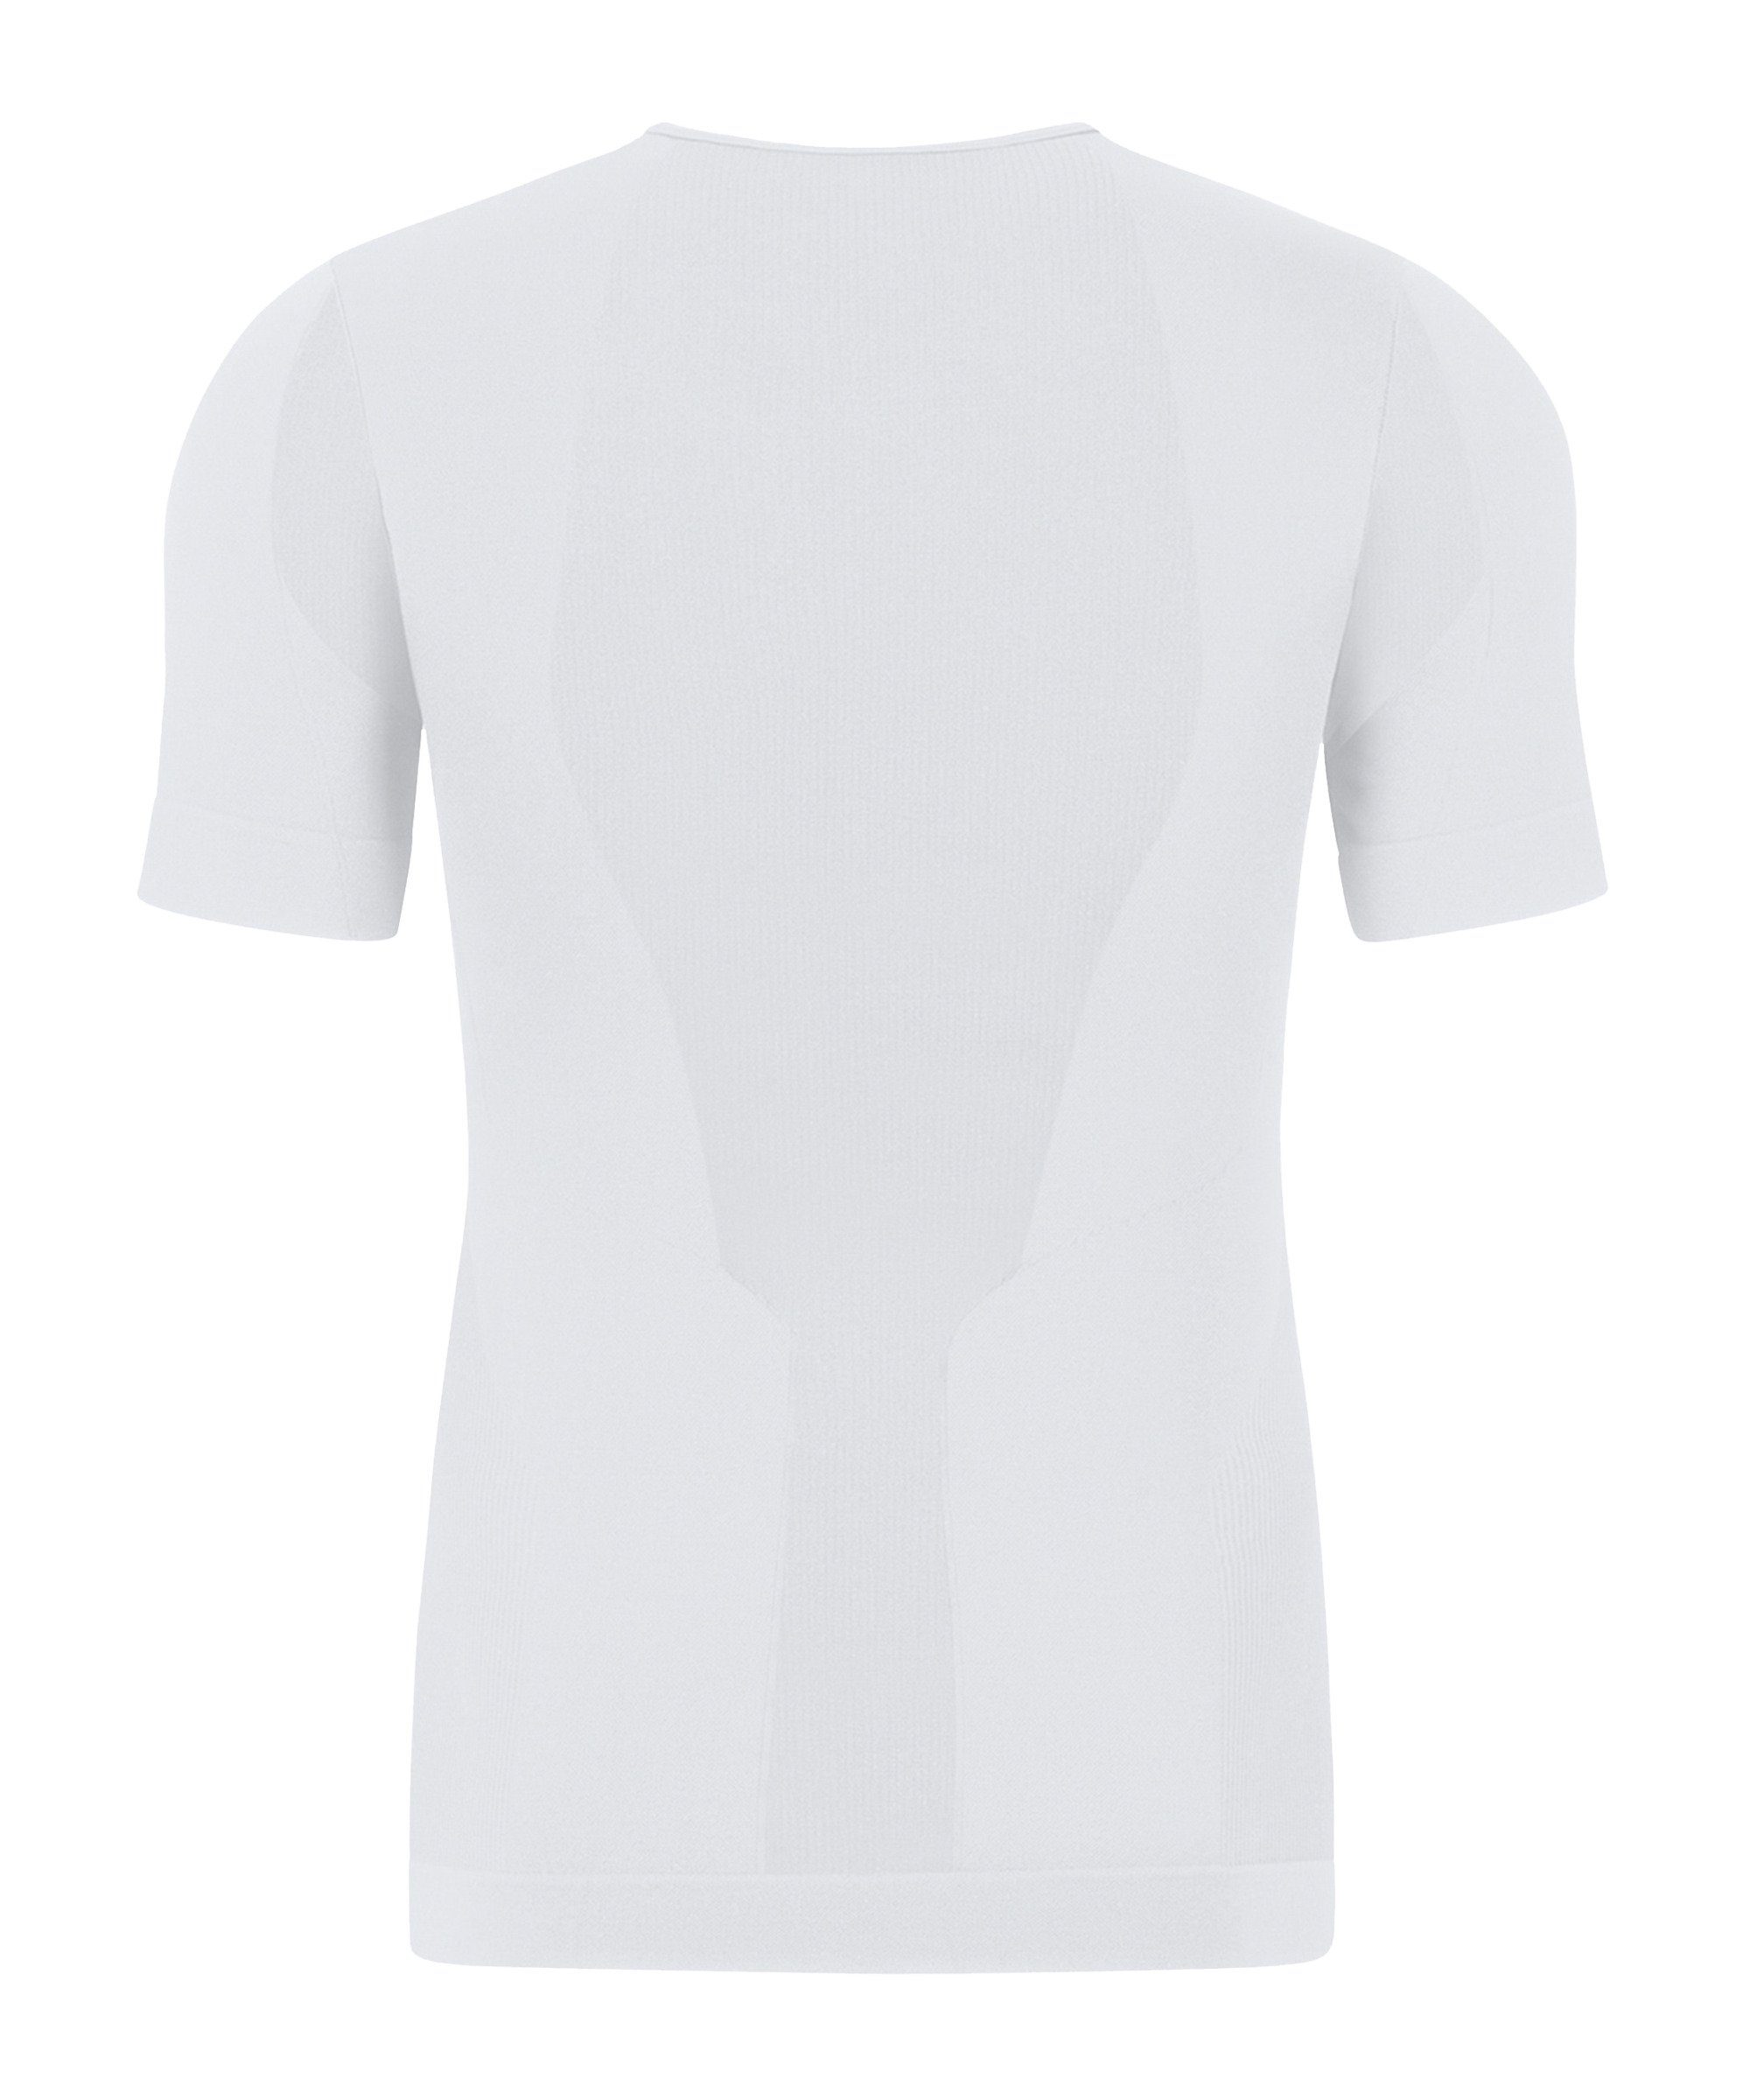 Jako T-Shirt Skinbalance 2.0 T-Shirt default weiss